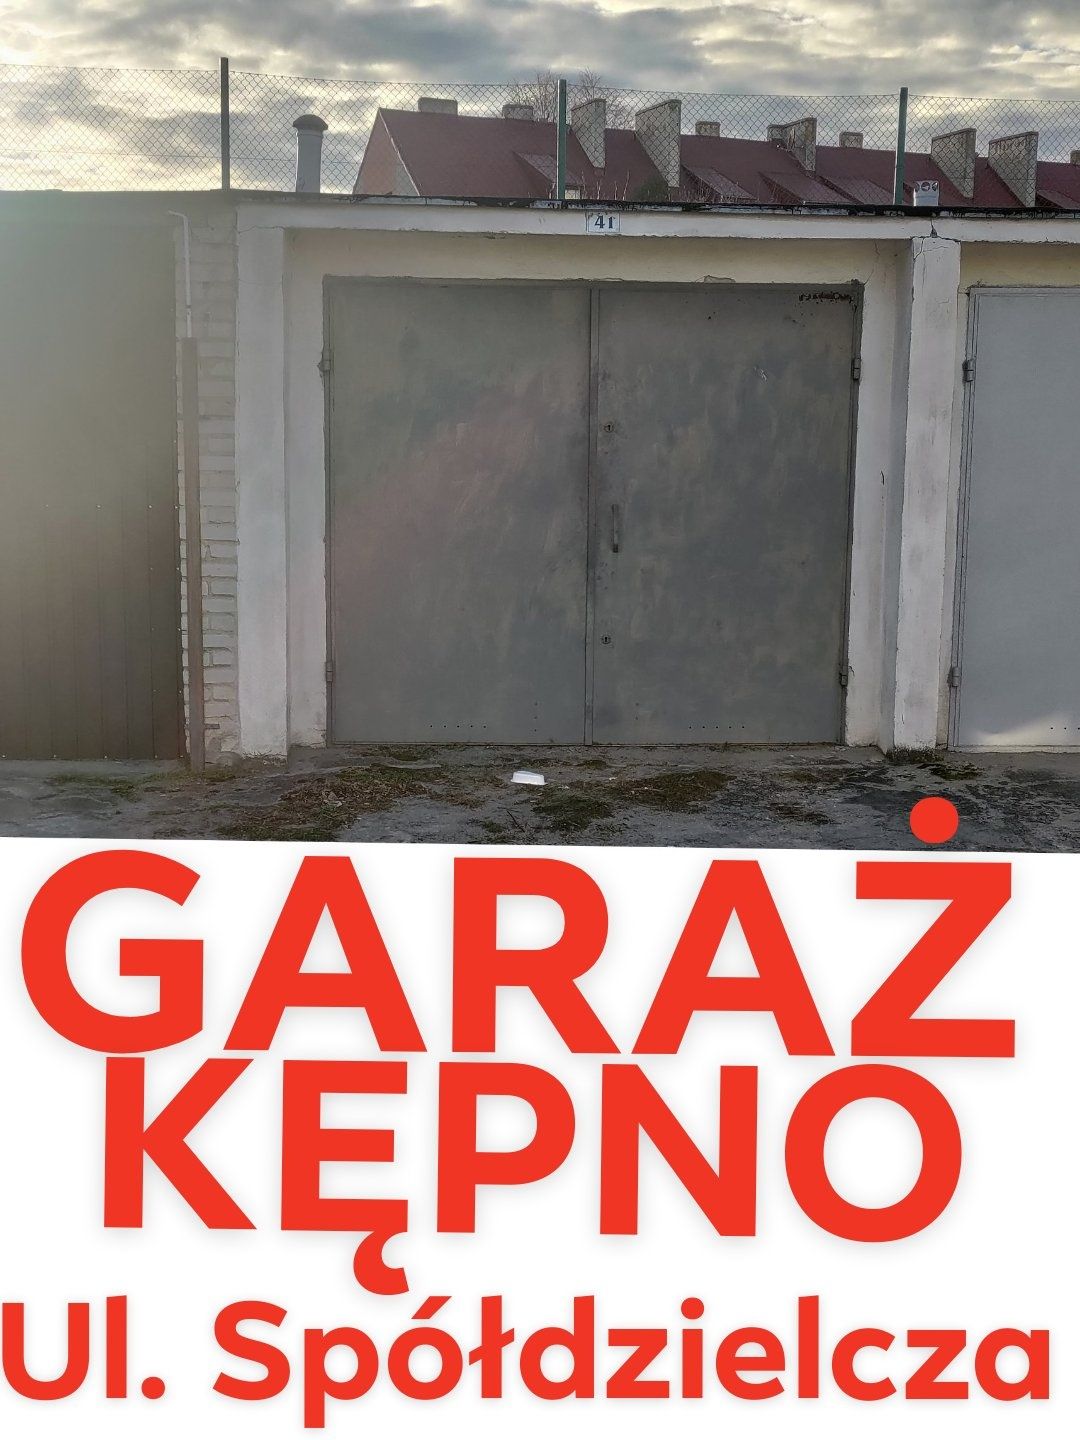 Garaż murowany Kępno ulica spółdzielcza 15,8m kw